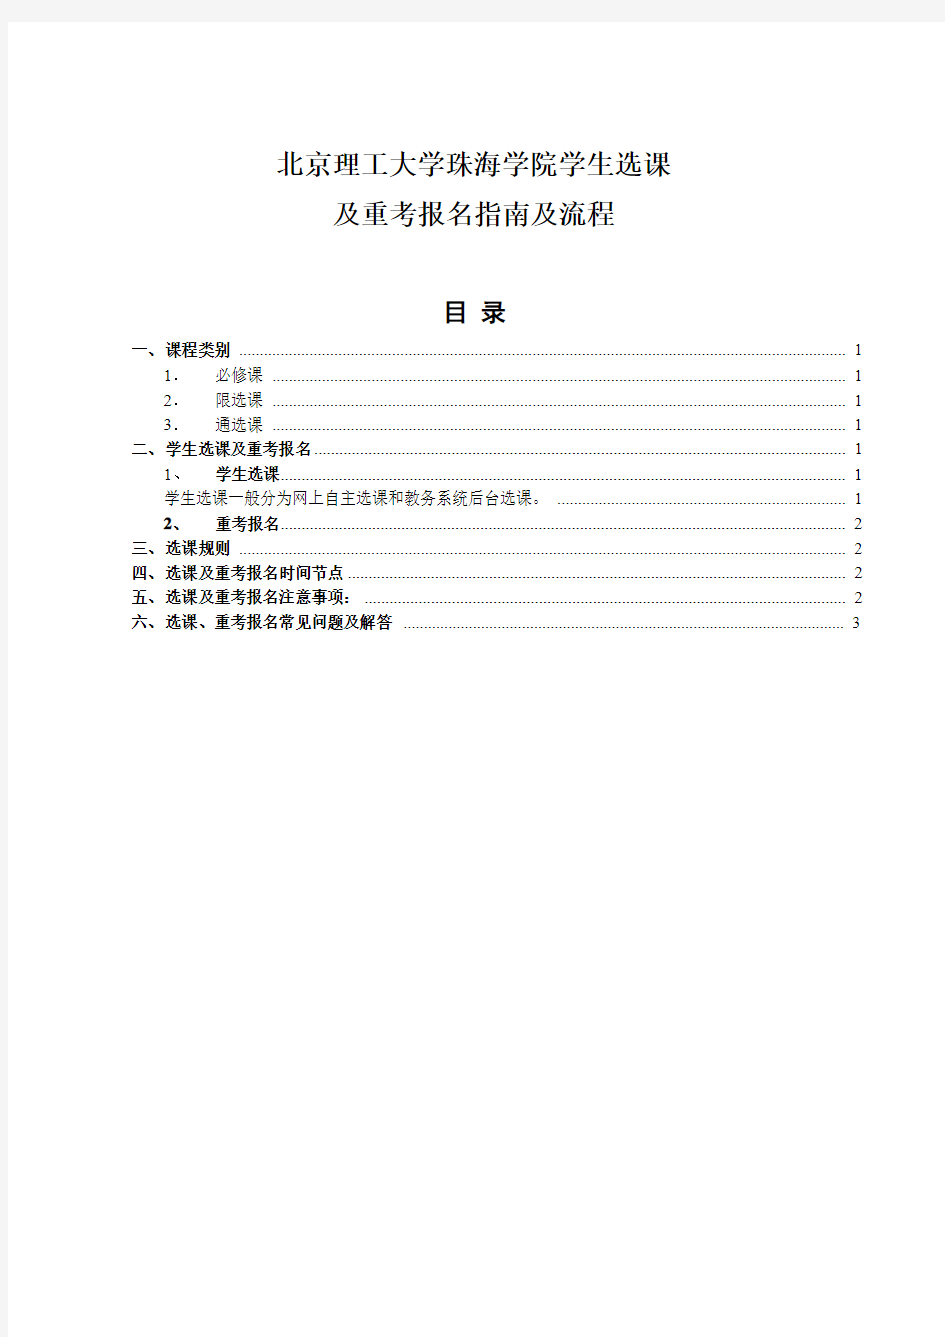 北京理工大学珠海学院学生选课及重考报名指南及流程22